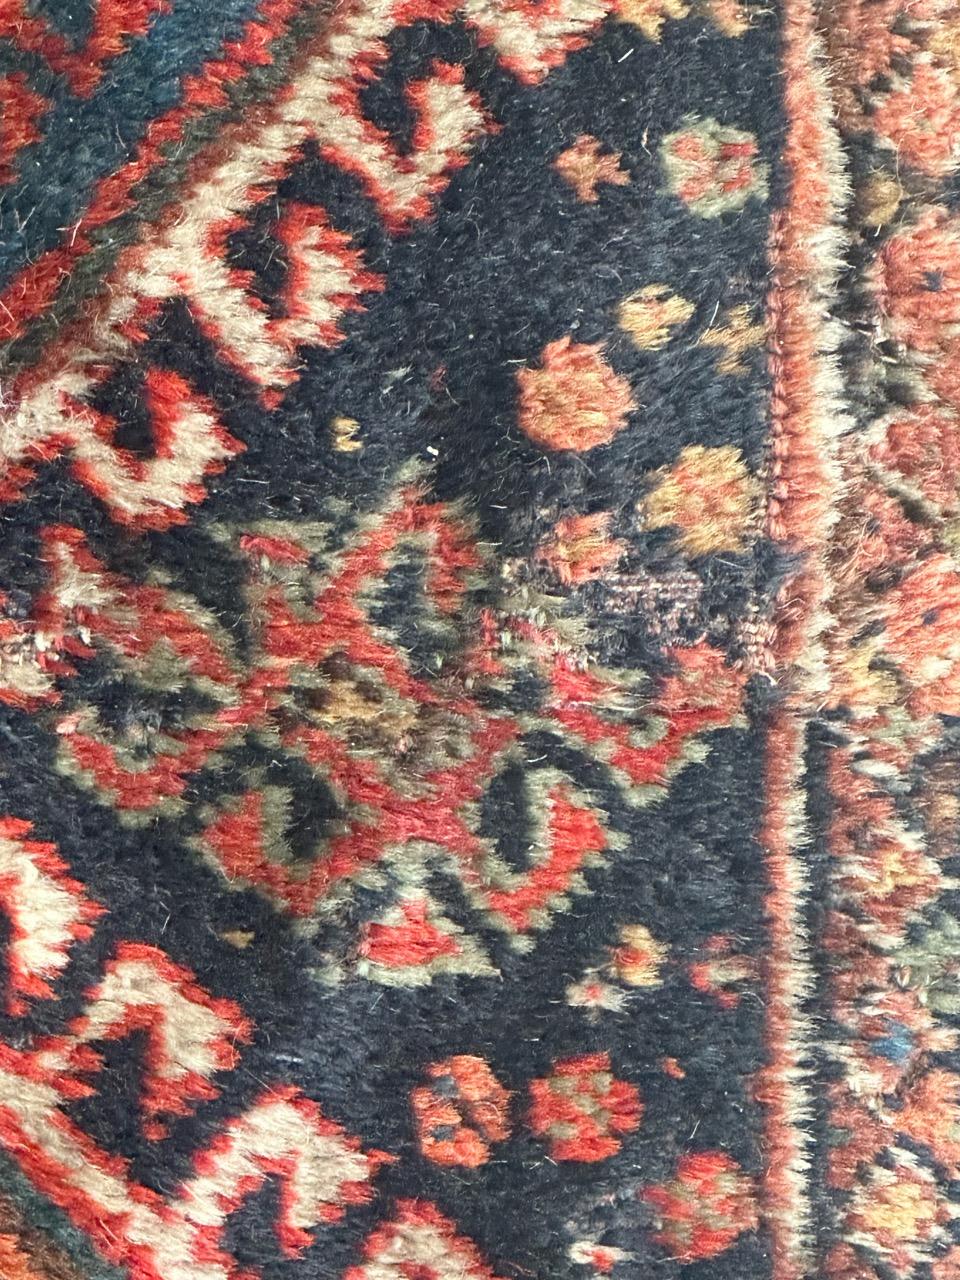 Joli tapis ancien de qashqai avec de beaux motifs géométriques et tribaux et de belles couleurs naturelles avec du bleu marine, du rouge, de l'orange, du bleu, du vert et du blanc. Il est entièrement noué à la main avec de la laine sur une base de